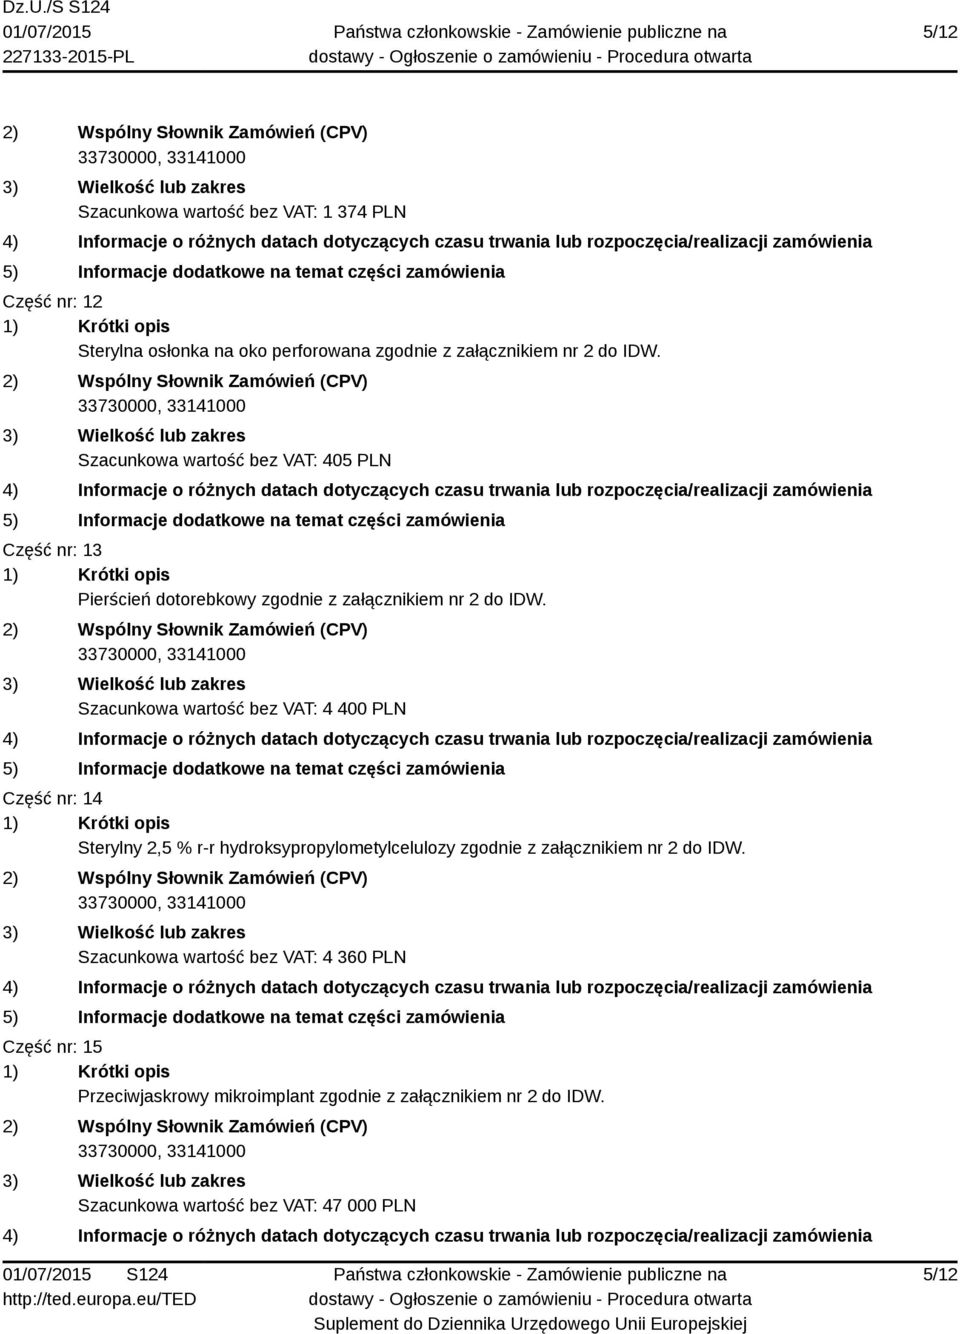 Szacunkowa wartość bez VAT: 4 400 PLN Część nr: 14 Sterylny 2,5 % r-r hydroksypropylometylcelulozy zgodnie z załącznikiem nr 2 do IDW.